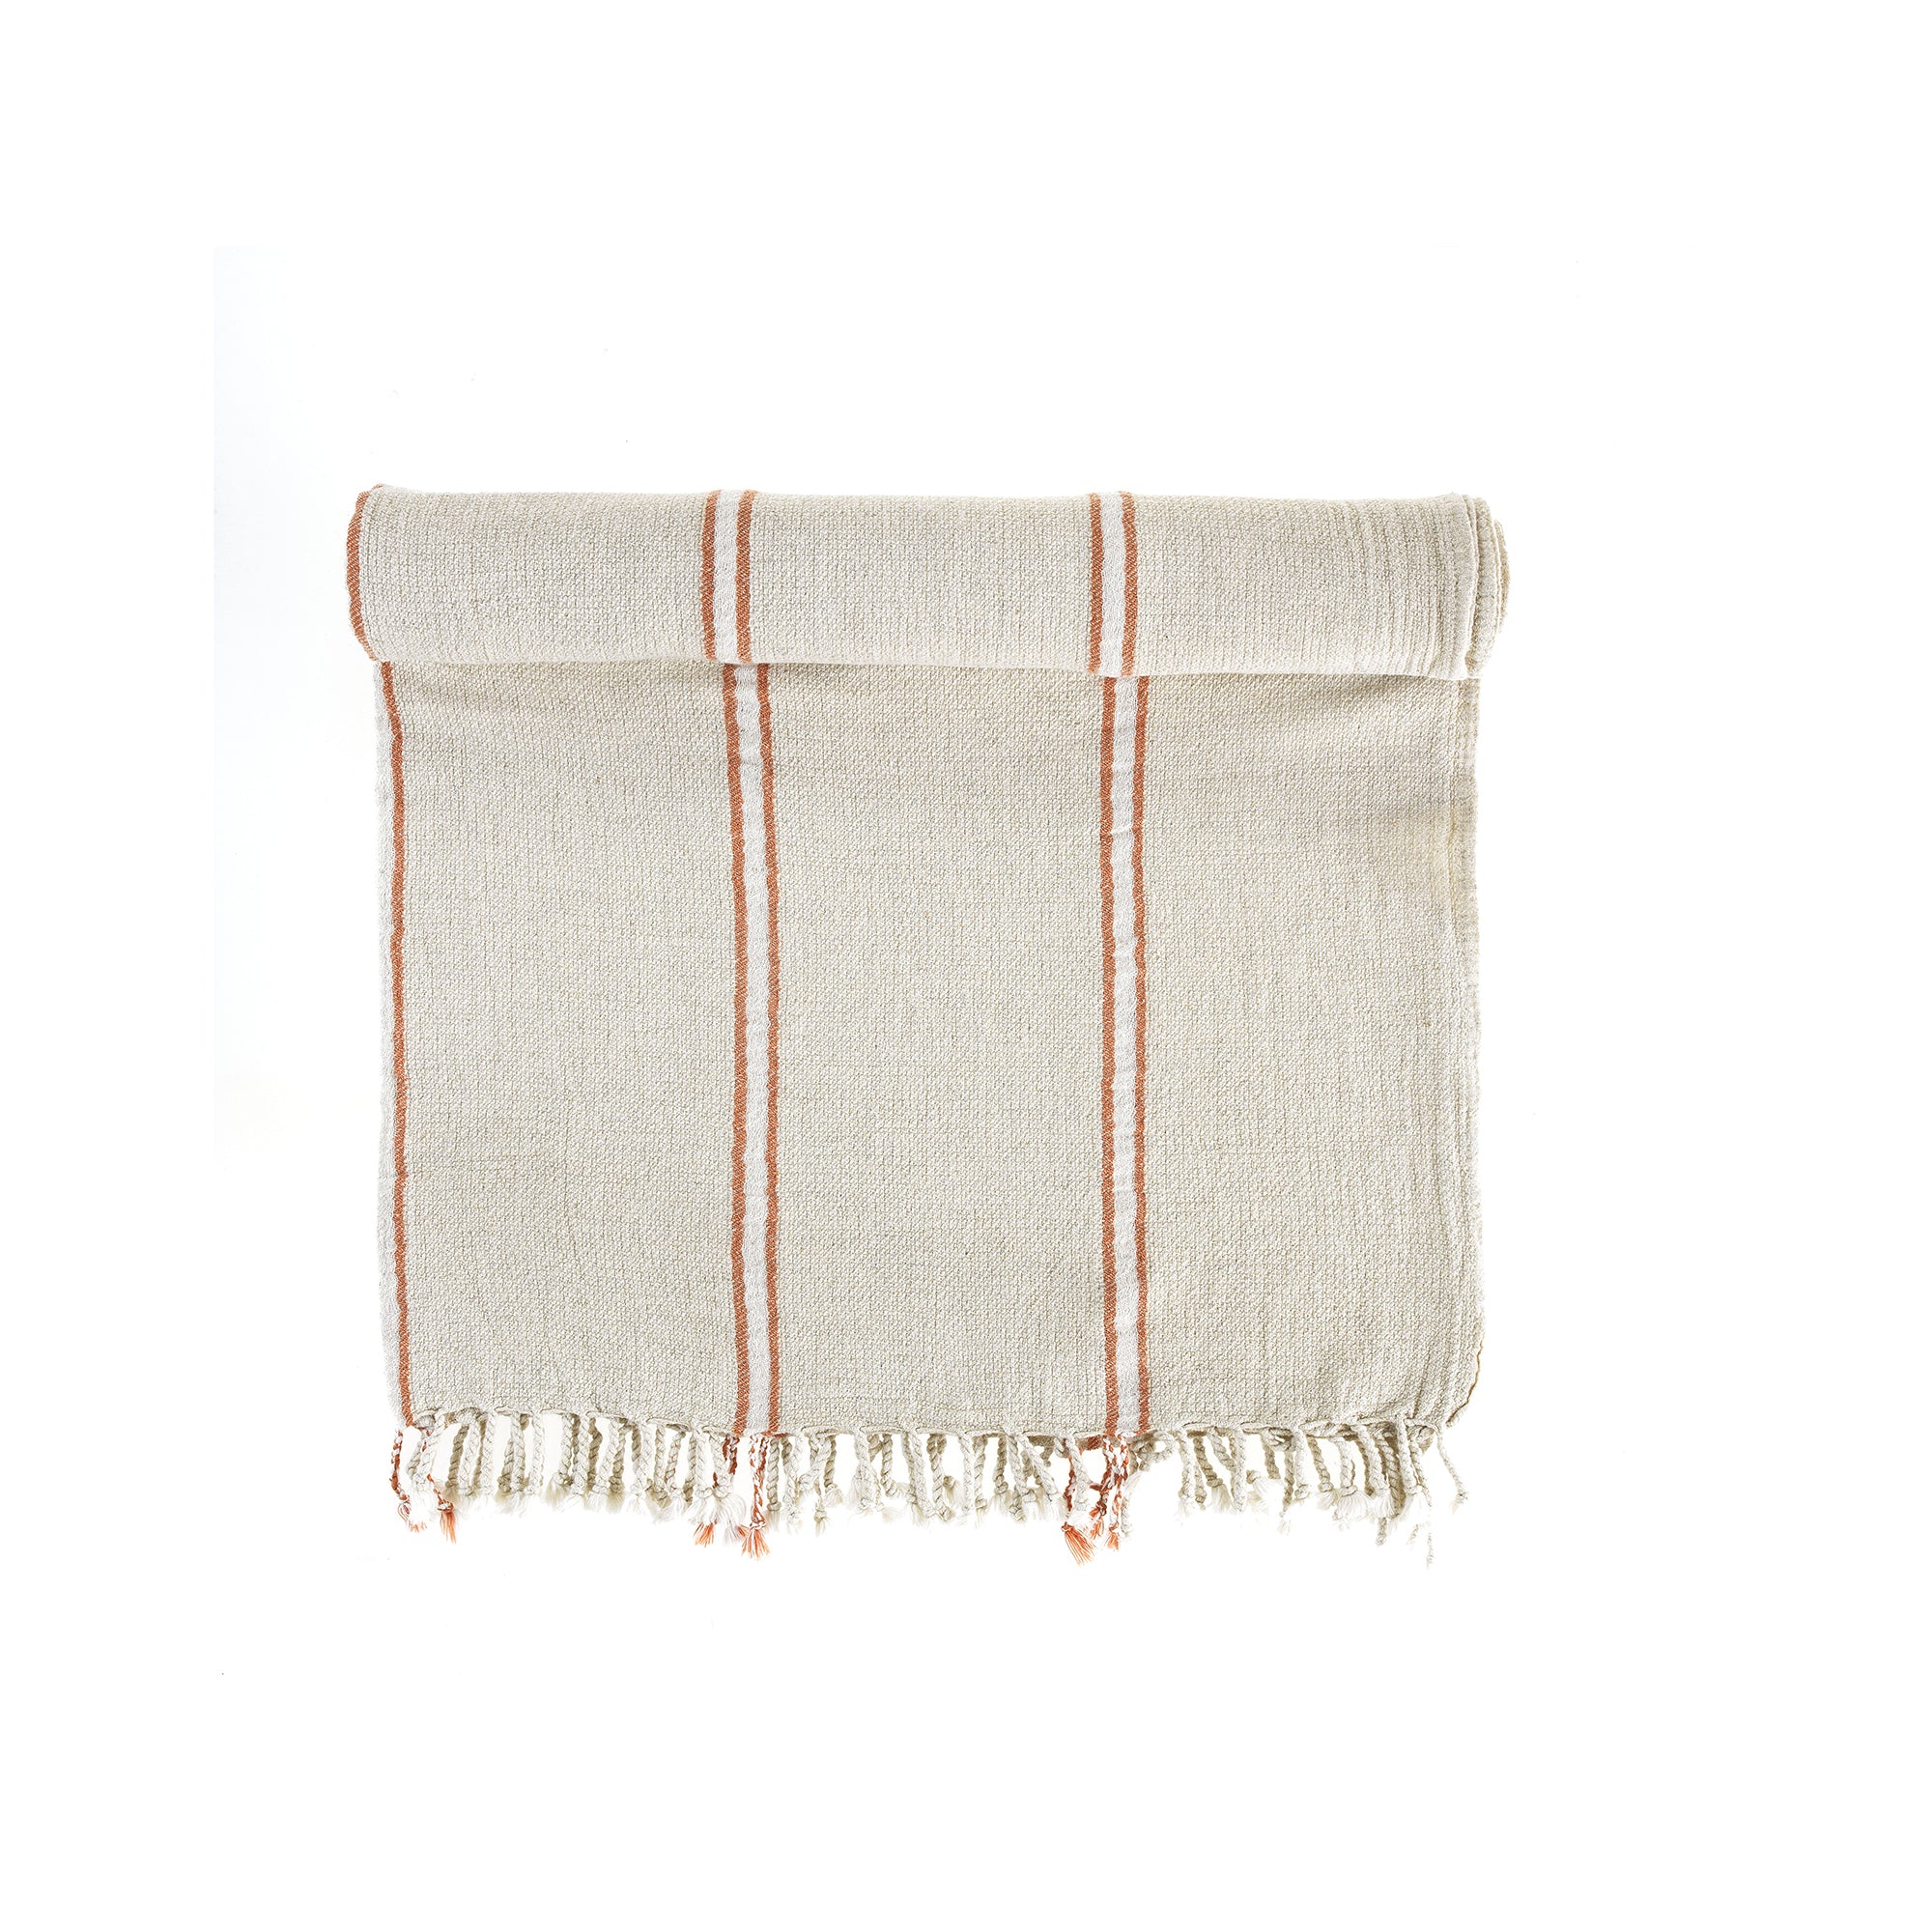 Smyrna Linen Turkish Towel